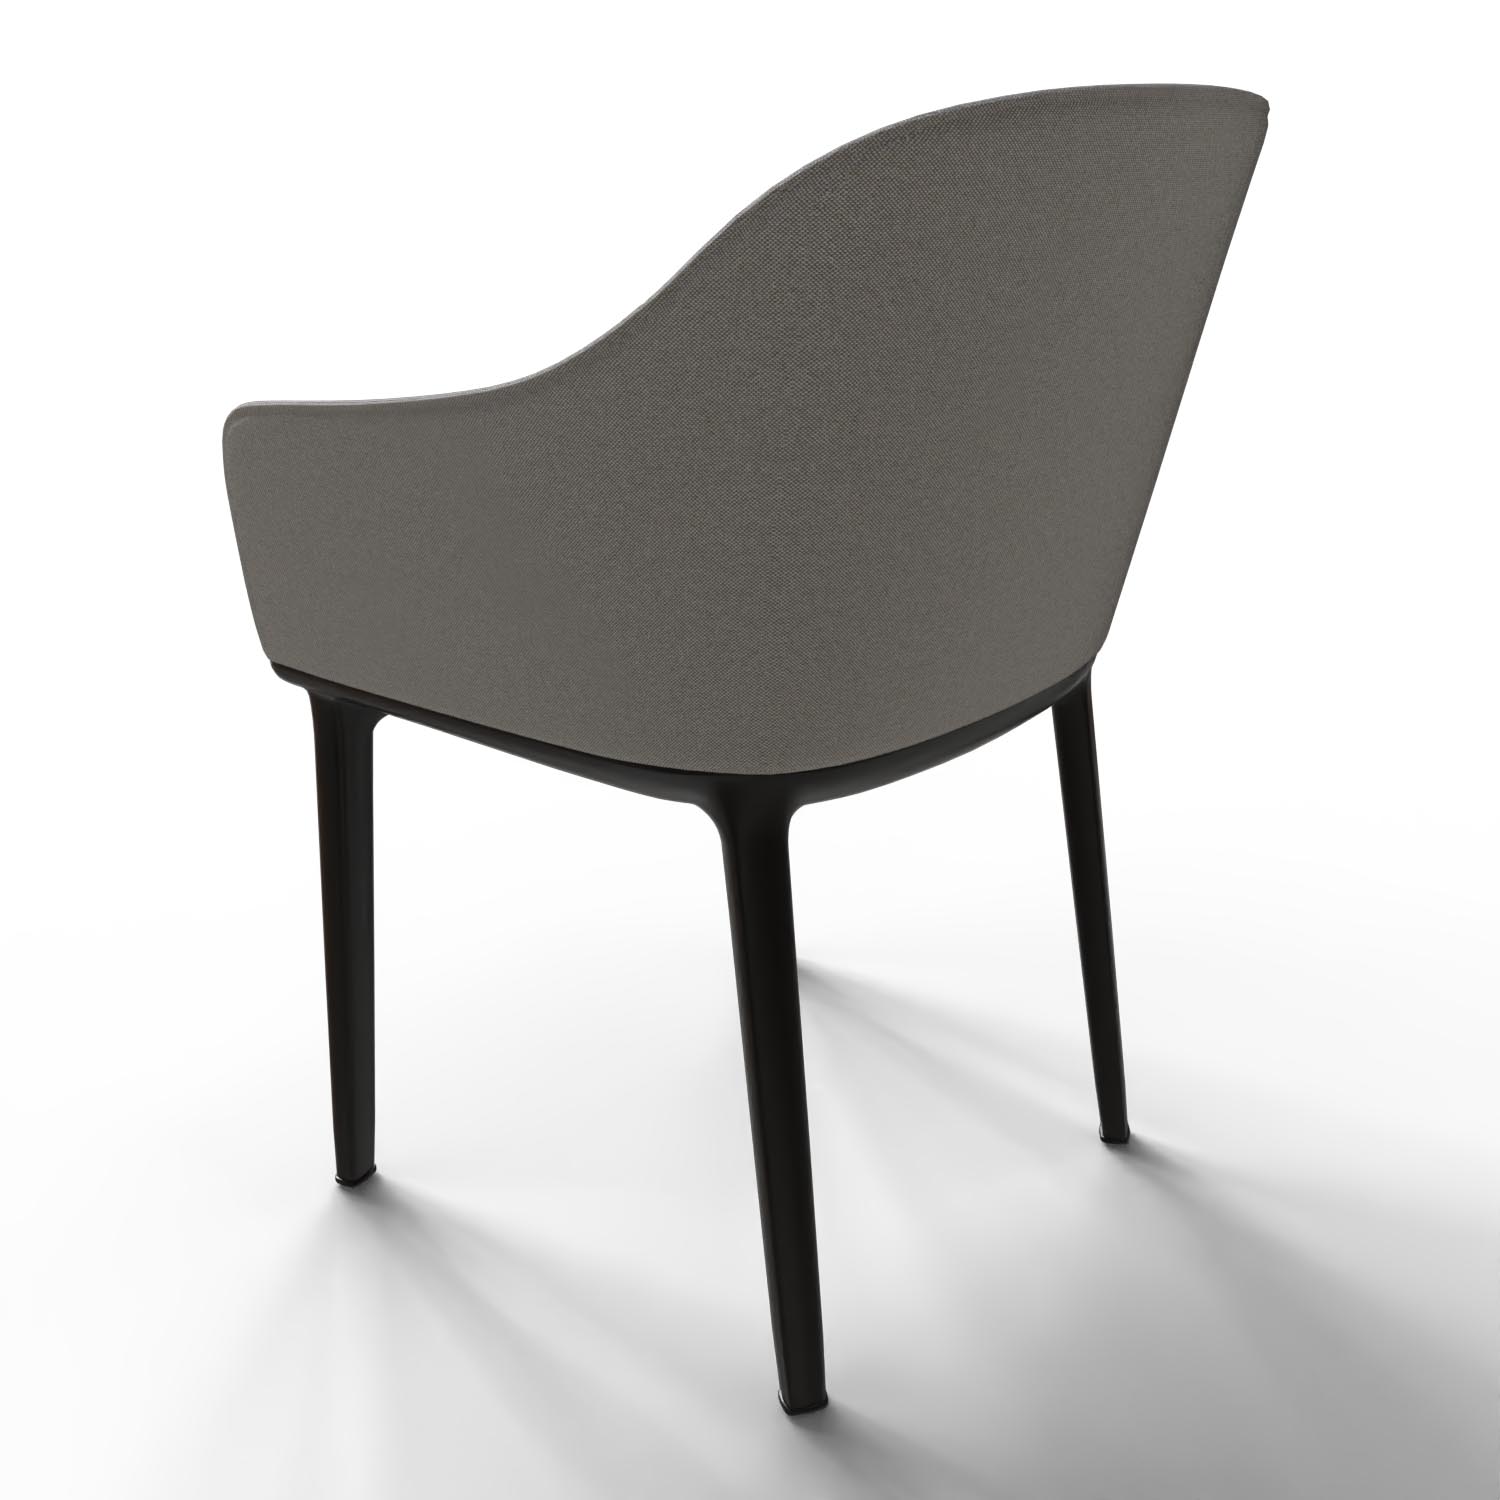 Stuhl Softshell Chair 42300600 in Cremeweiß / Sierragrau